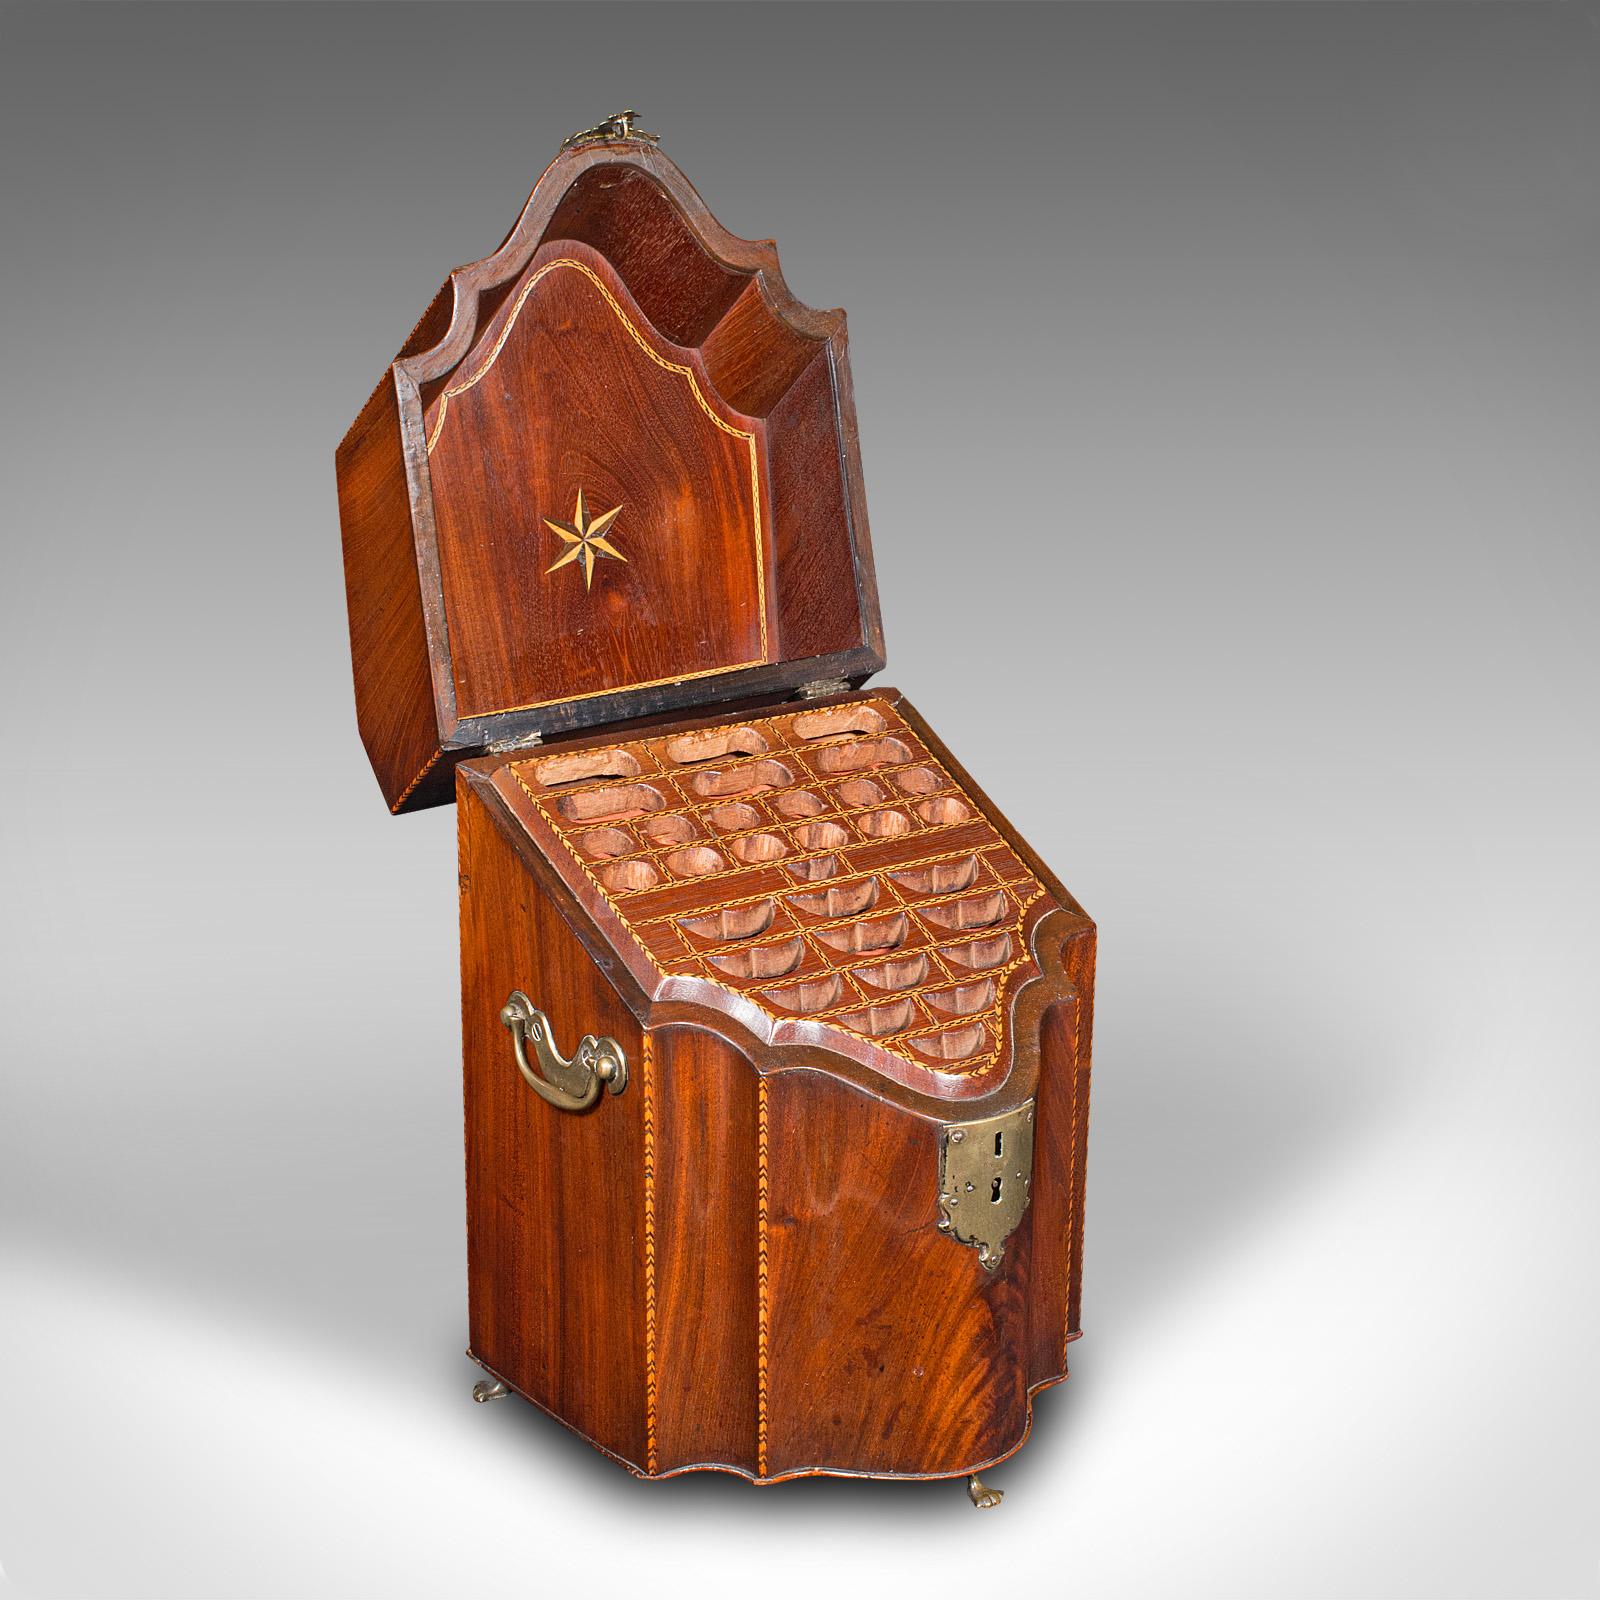 Dies ist ein antiker Messerkasten. Eine englische, geflammte Mahagoni-Besteckdose mit Eichenholz-Innenausstattung aus der georgianischen Zeit, um 1770.

Hervorragende Handwerkskunst mit schöner Maserung und nützlichen Proportionen
Zeigt eine